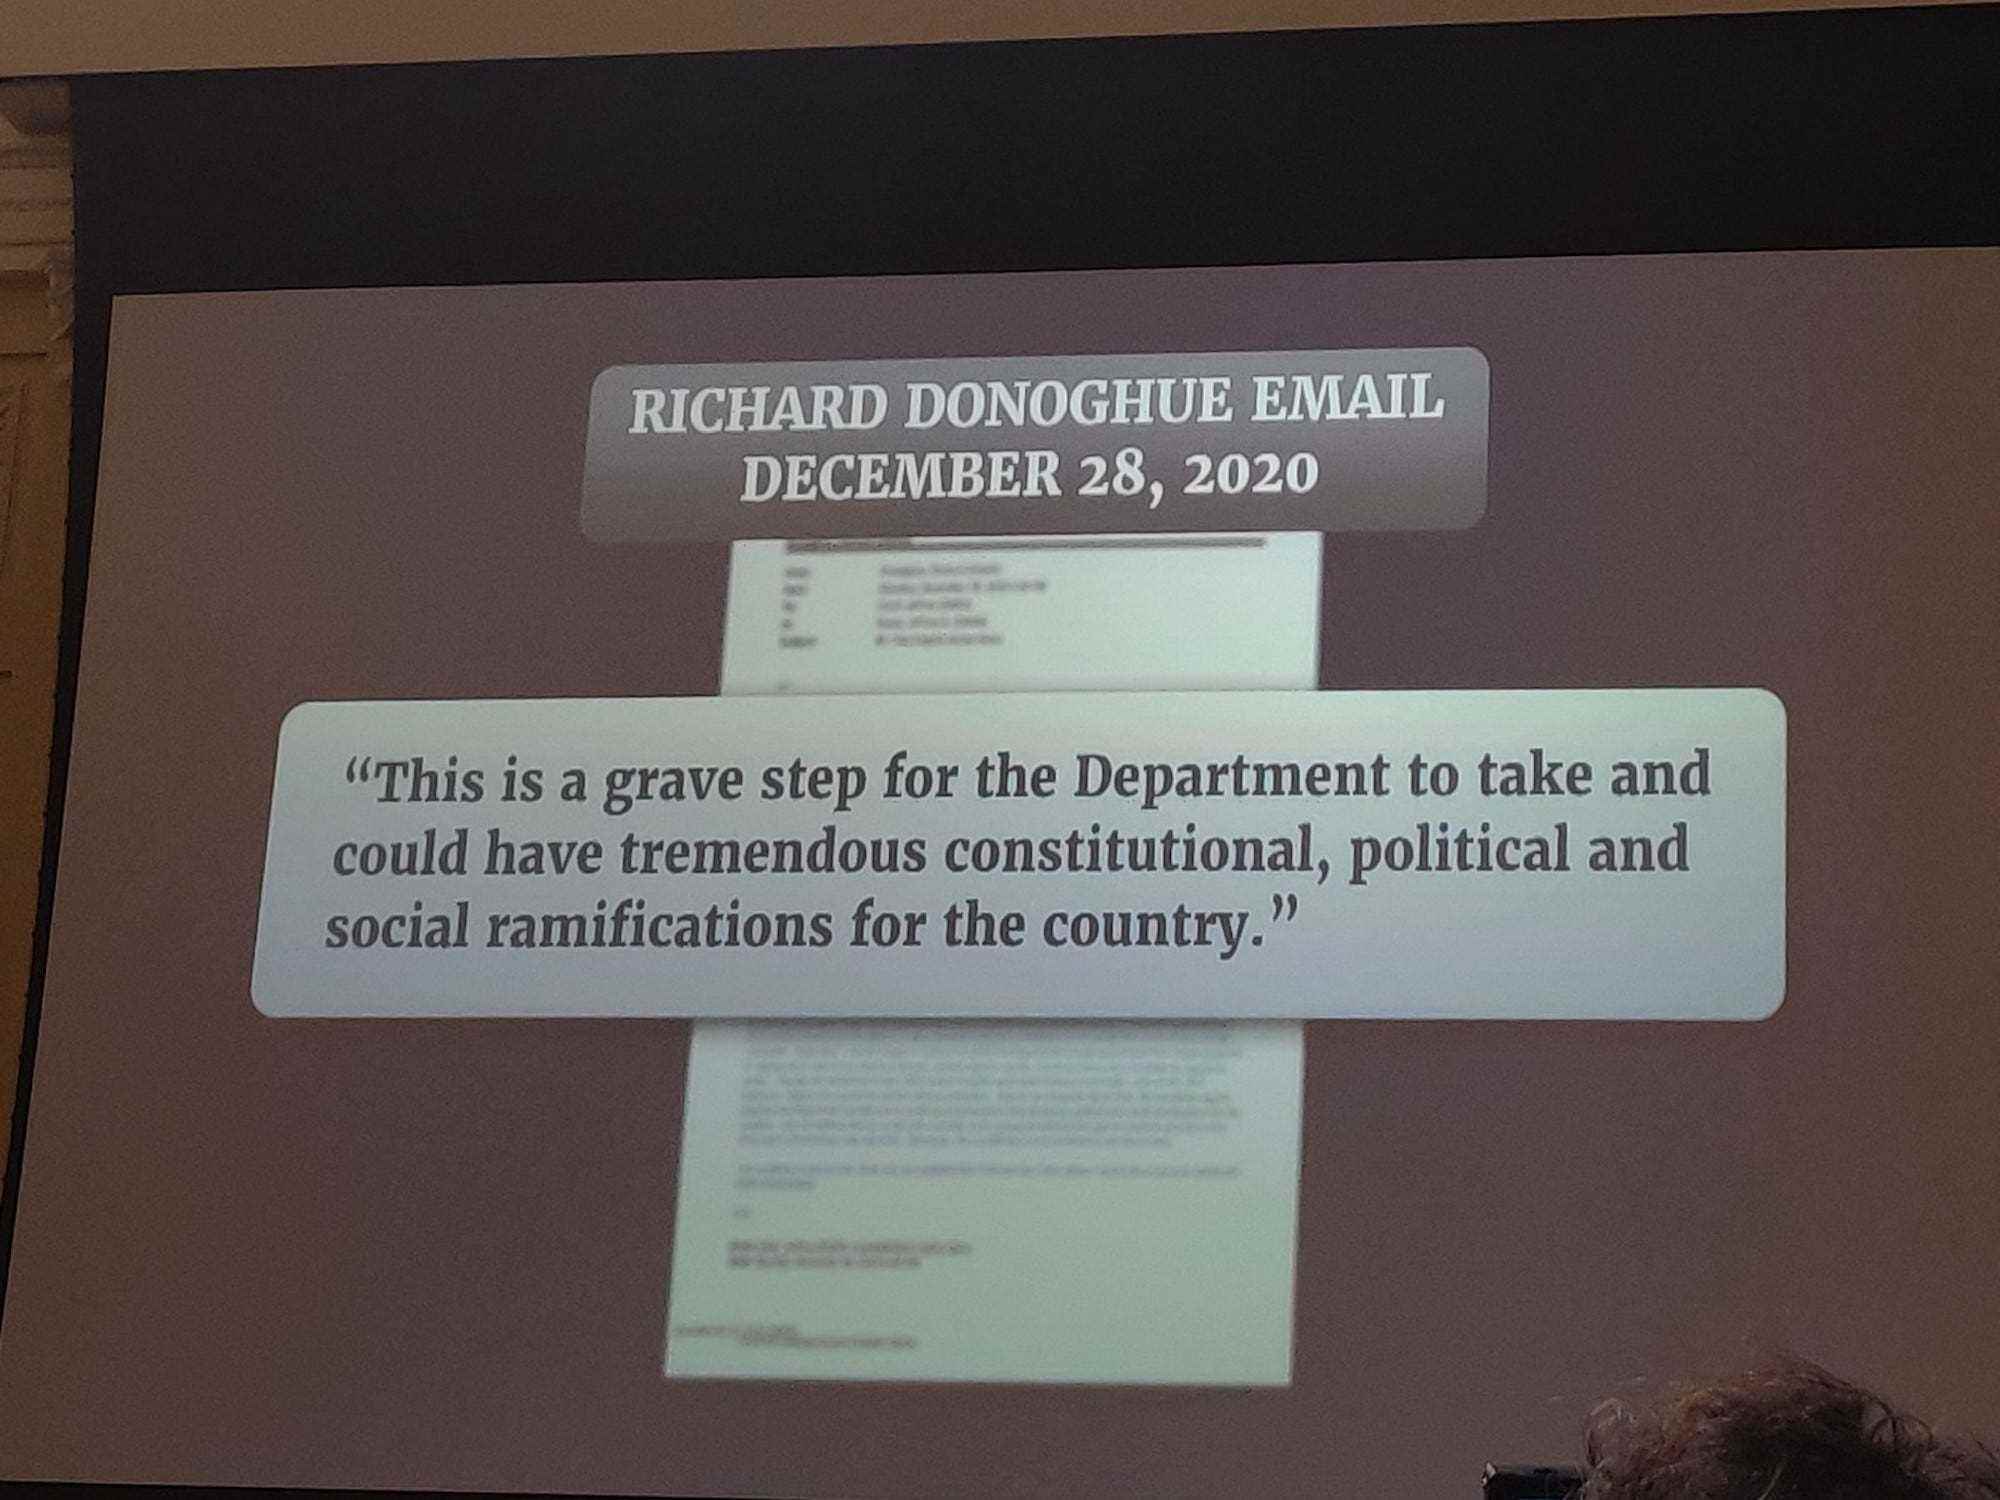 Eine Momentaufnahme einer Warnung, die der stellvertretende stellvertretende Generalstaatsanwalt Richard Donoghue herausgab, nachdem ihm Trumps gefälschtes Wahlbetrugsprogramm präsentiert worden war.